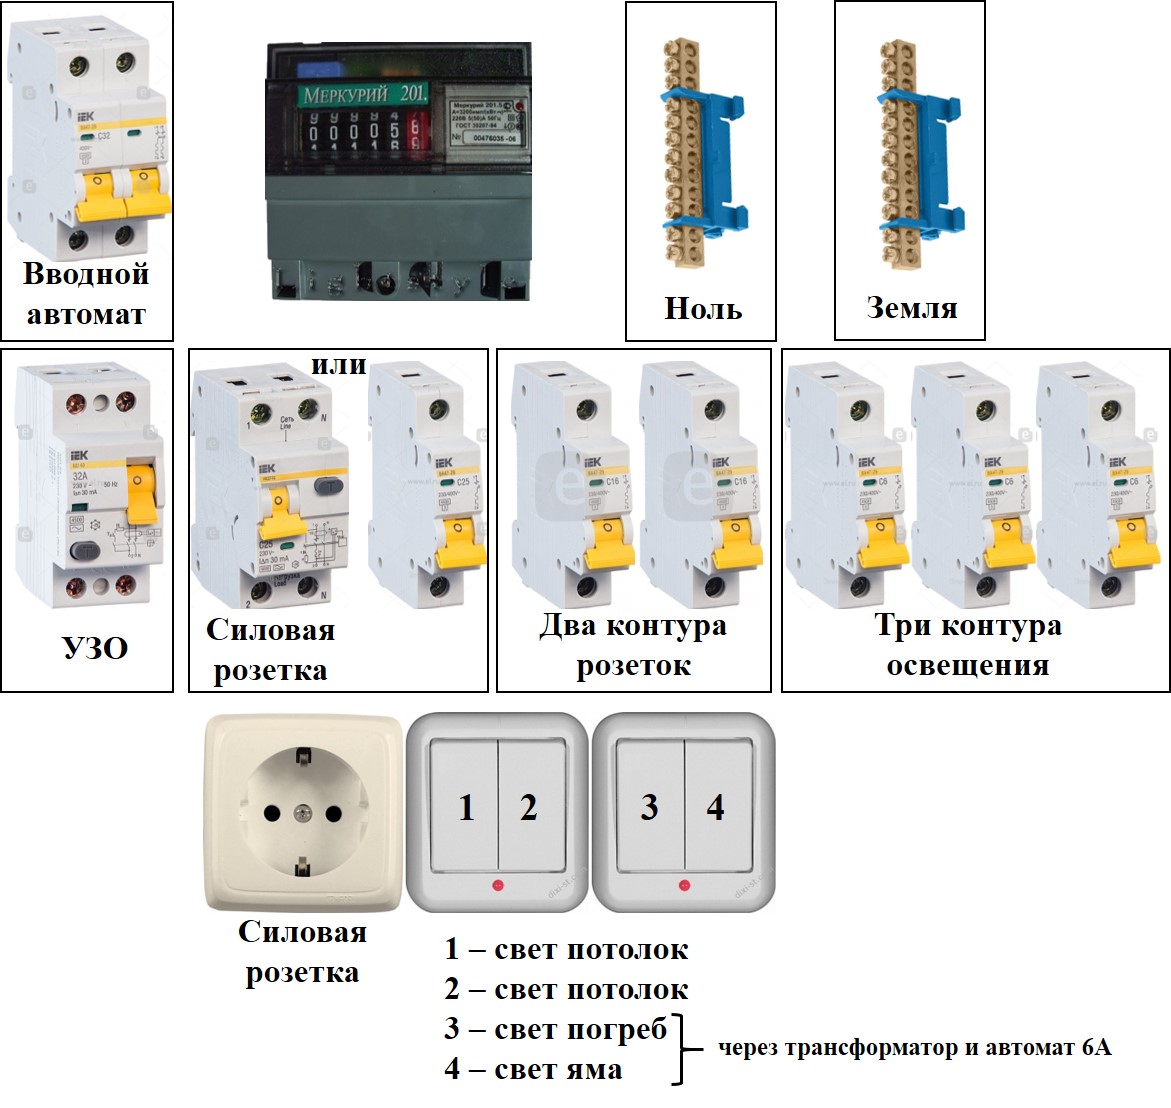 Электрические автоматы - как выбрать: однофазные и трехфазные, как рассчитать необходимую мощность, фото и видео обзор